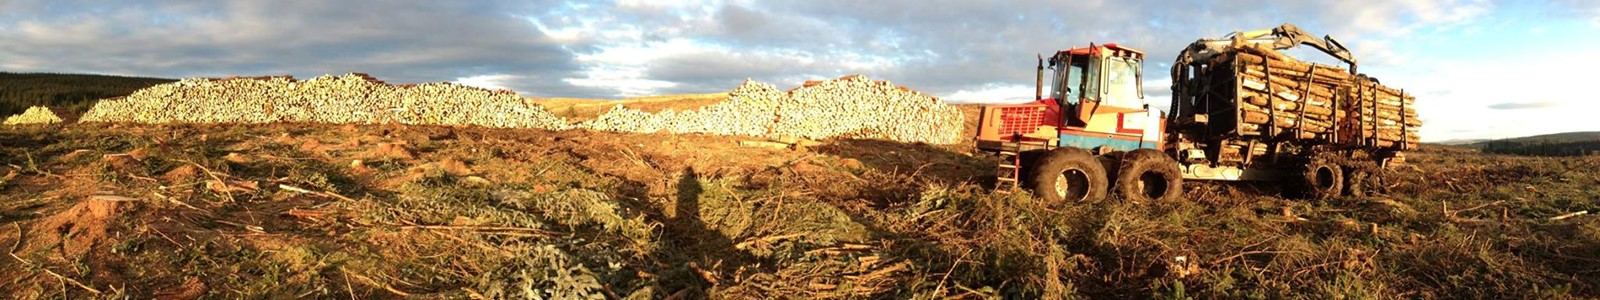 panorama timber stacks